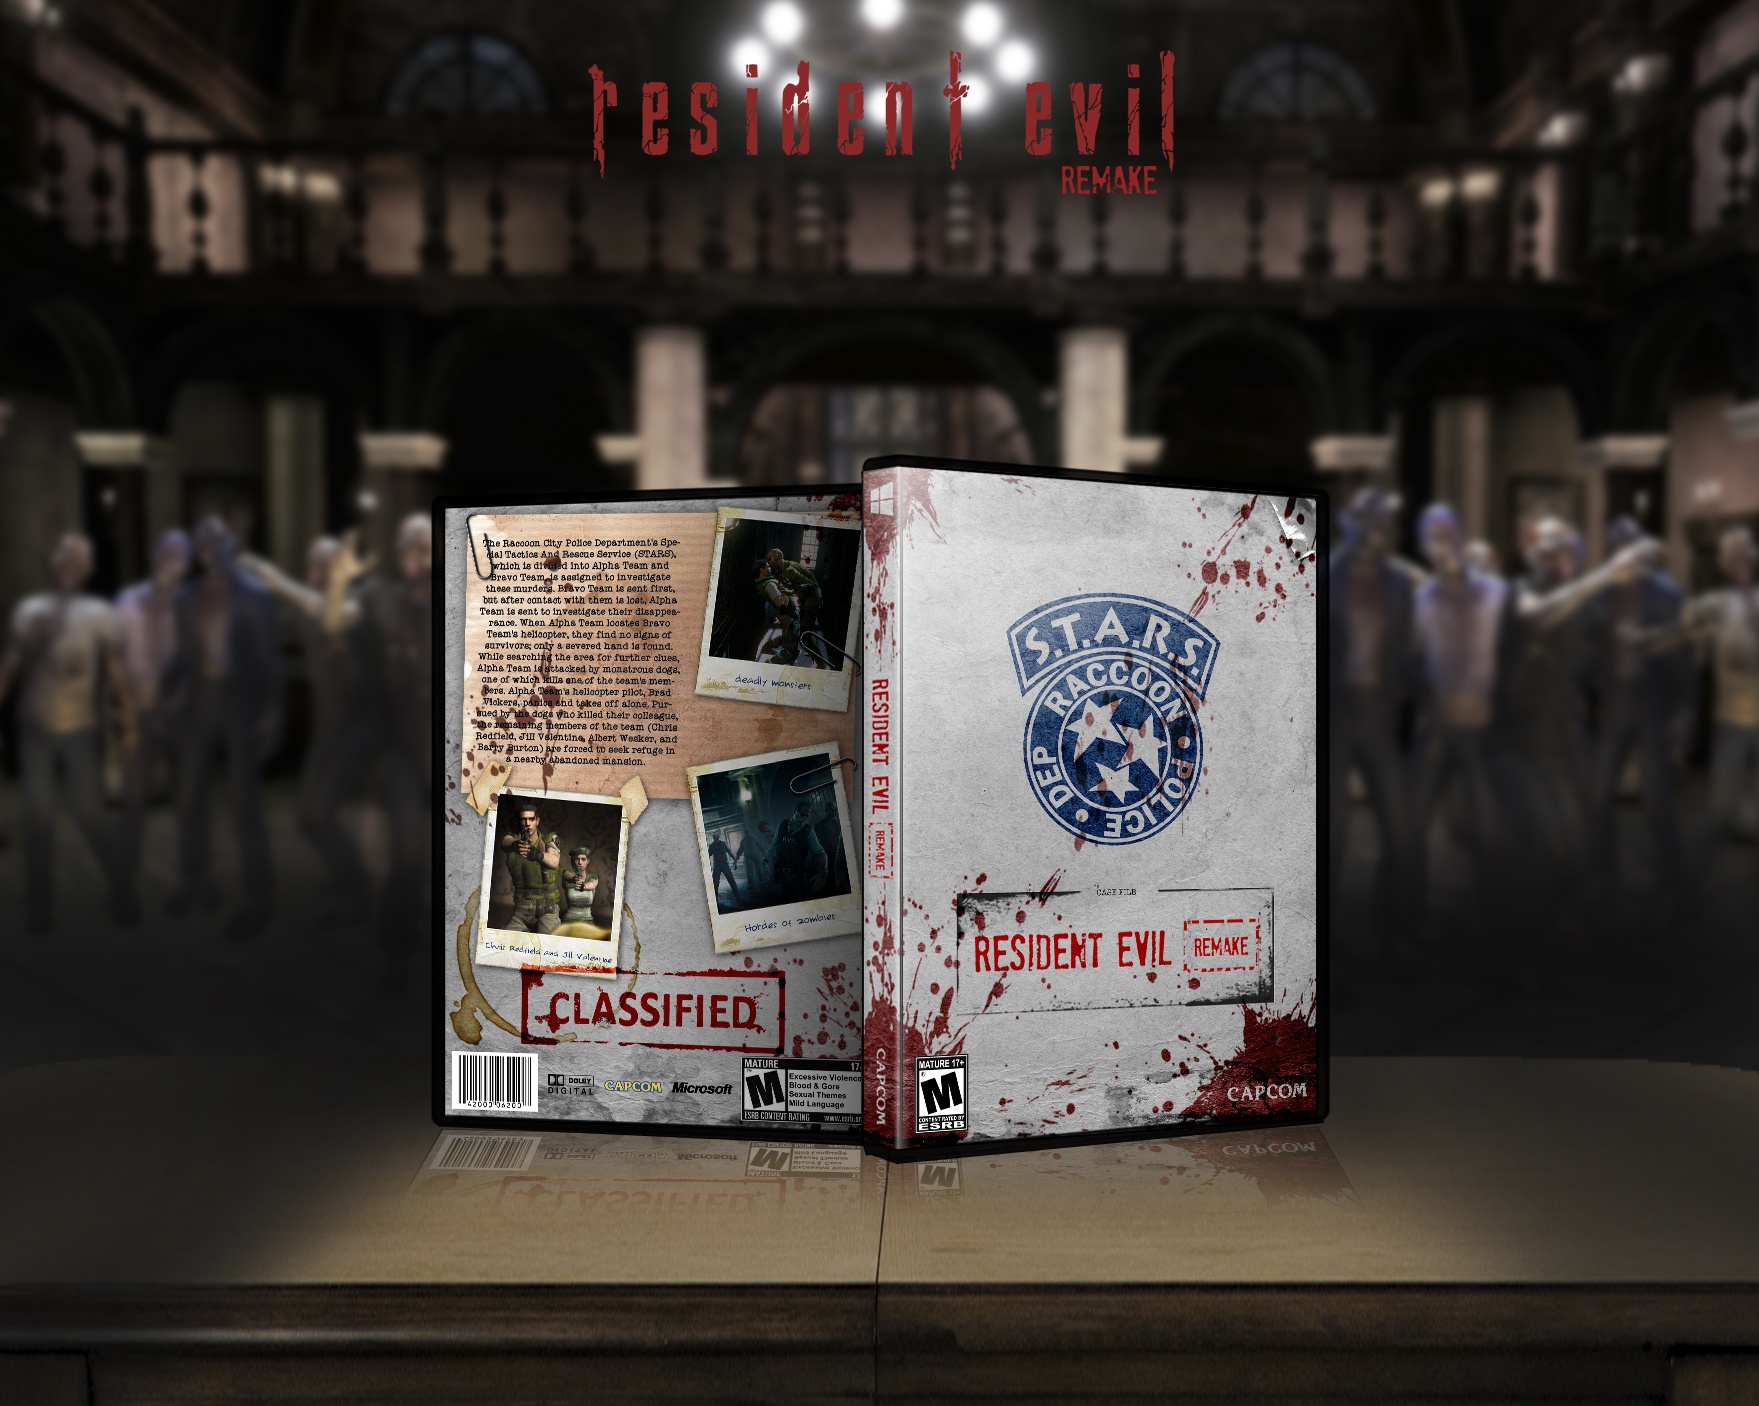 Resident Evil - Remake box cover